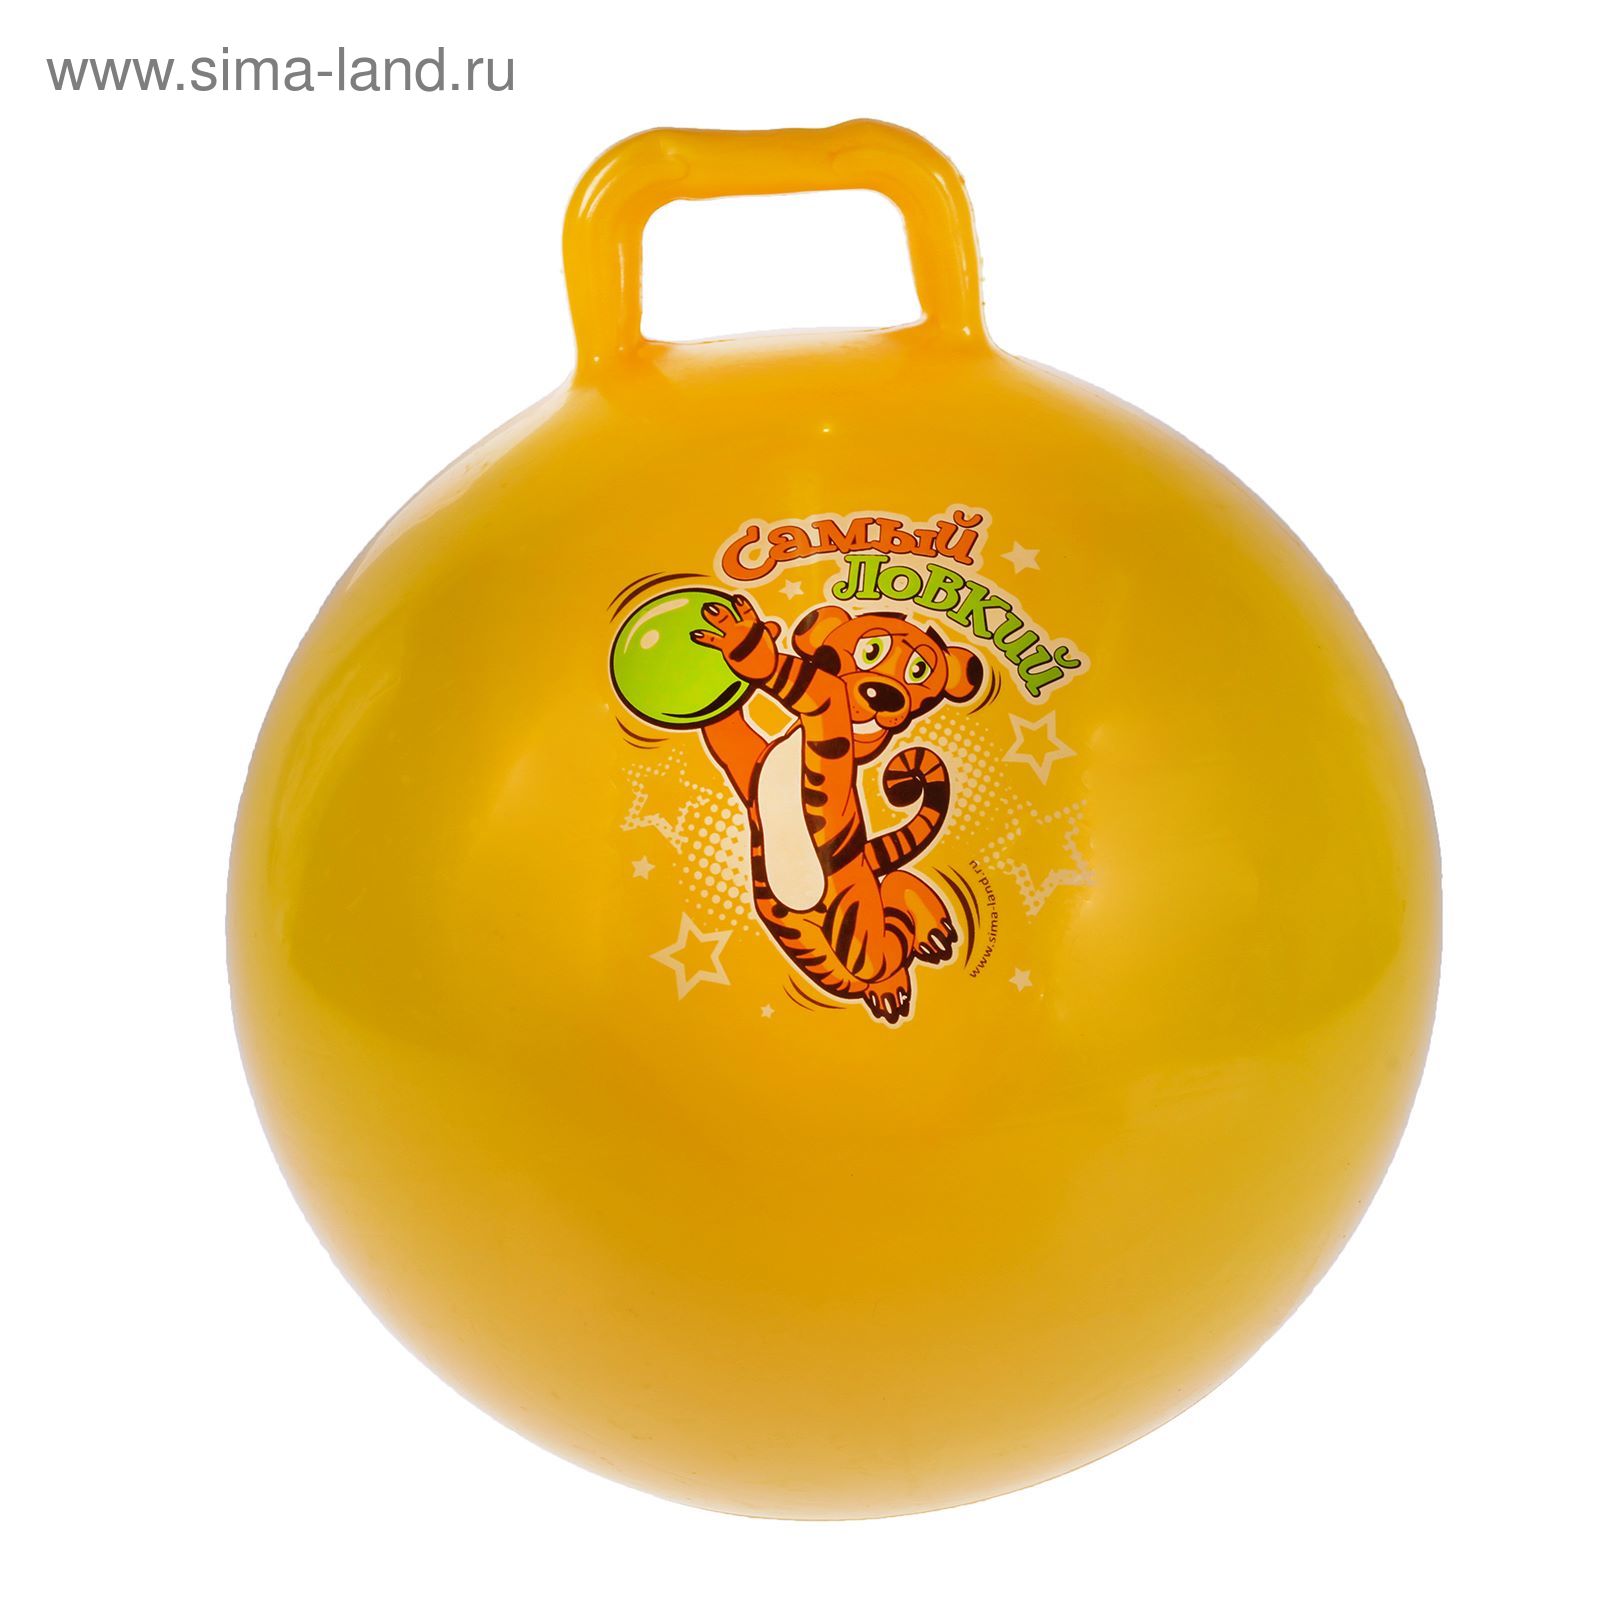 Мяч попрыгун с ручкой d=55 см, 420 гр, цвета микс